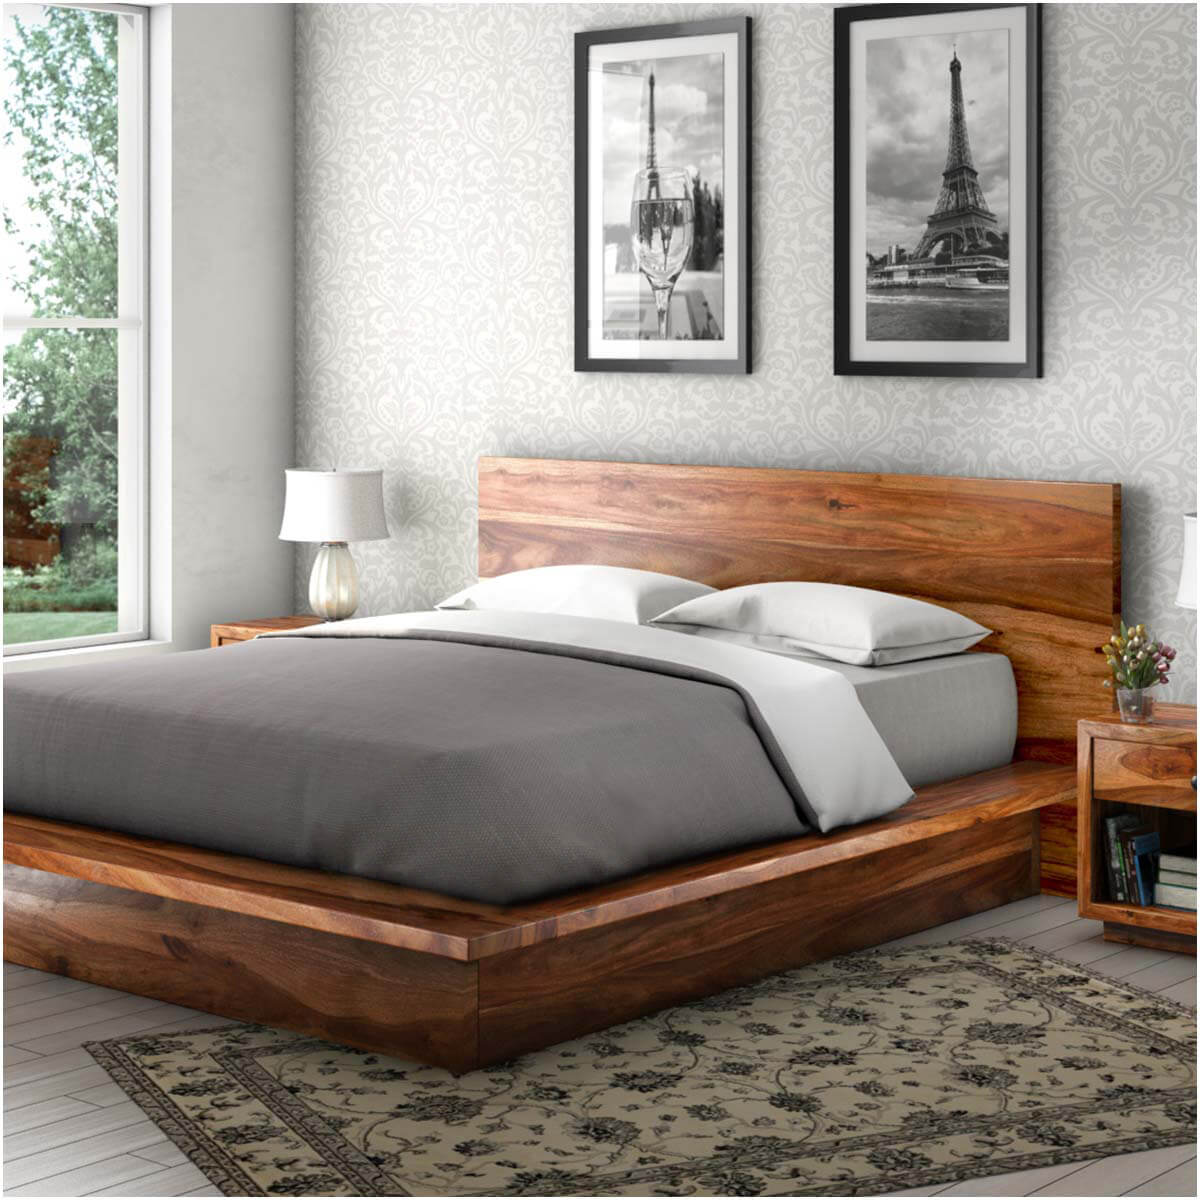 Solid wood beds delaware solid wood platform bed frame JUZTJNB